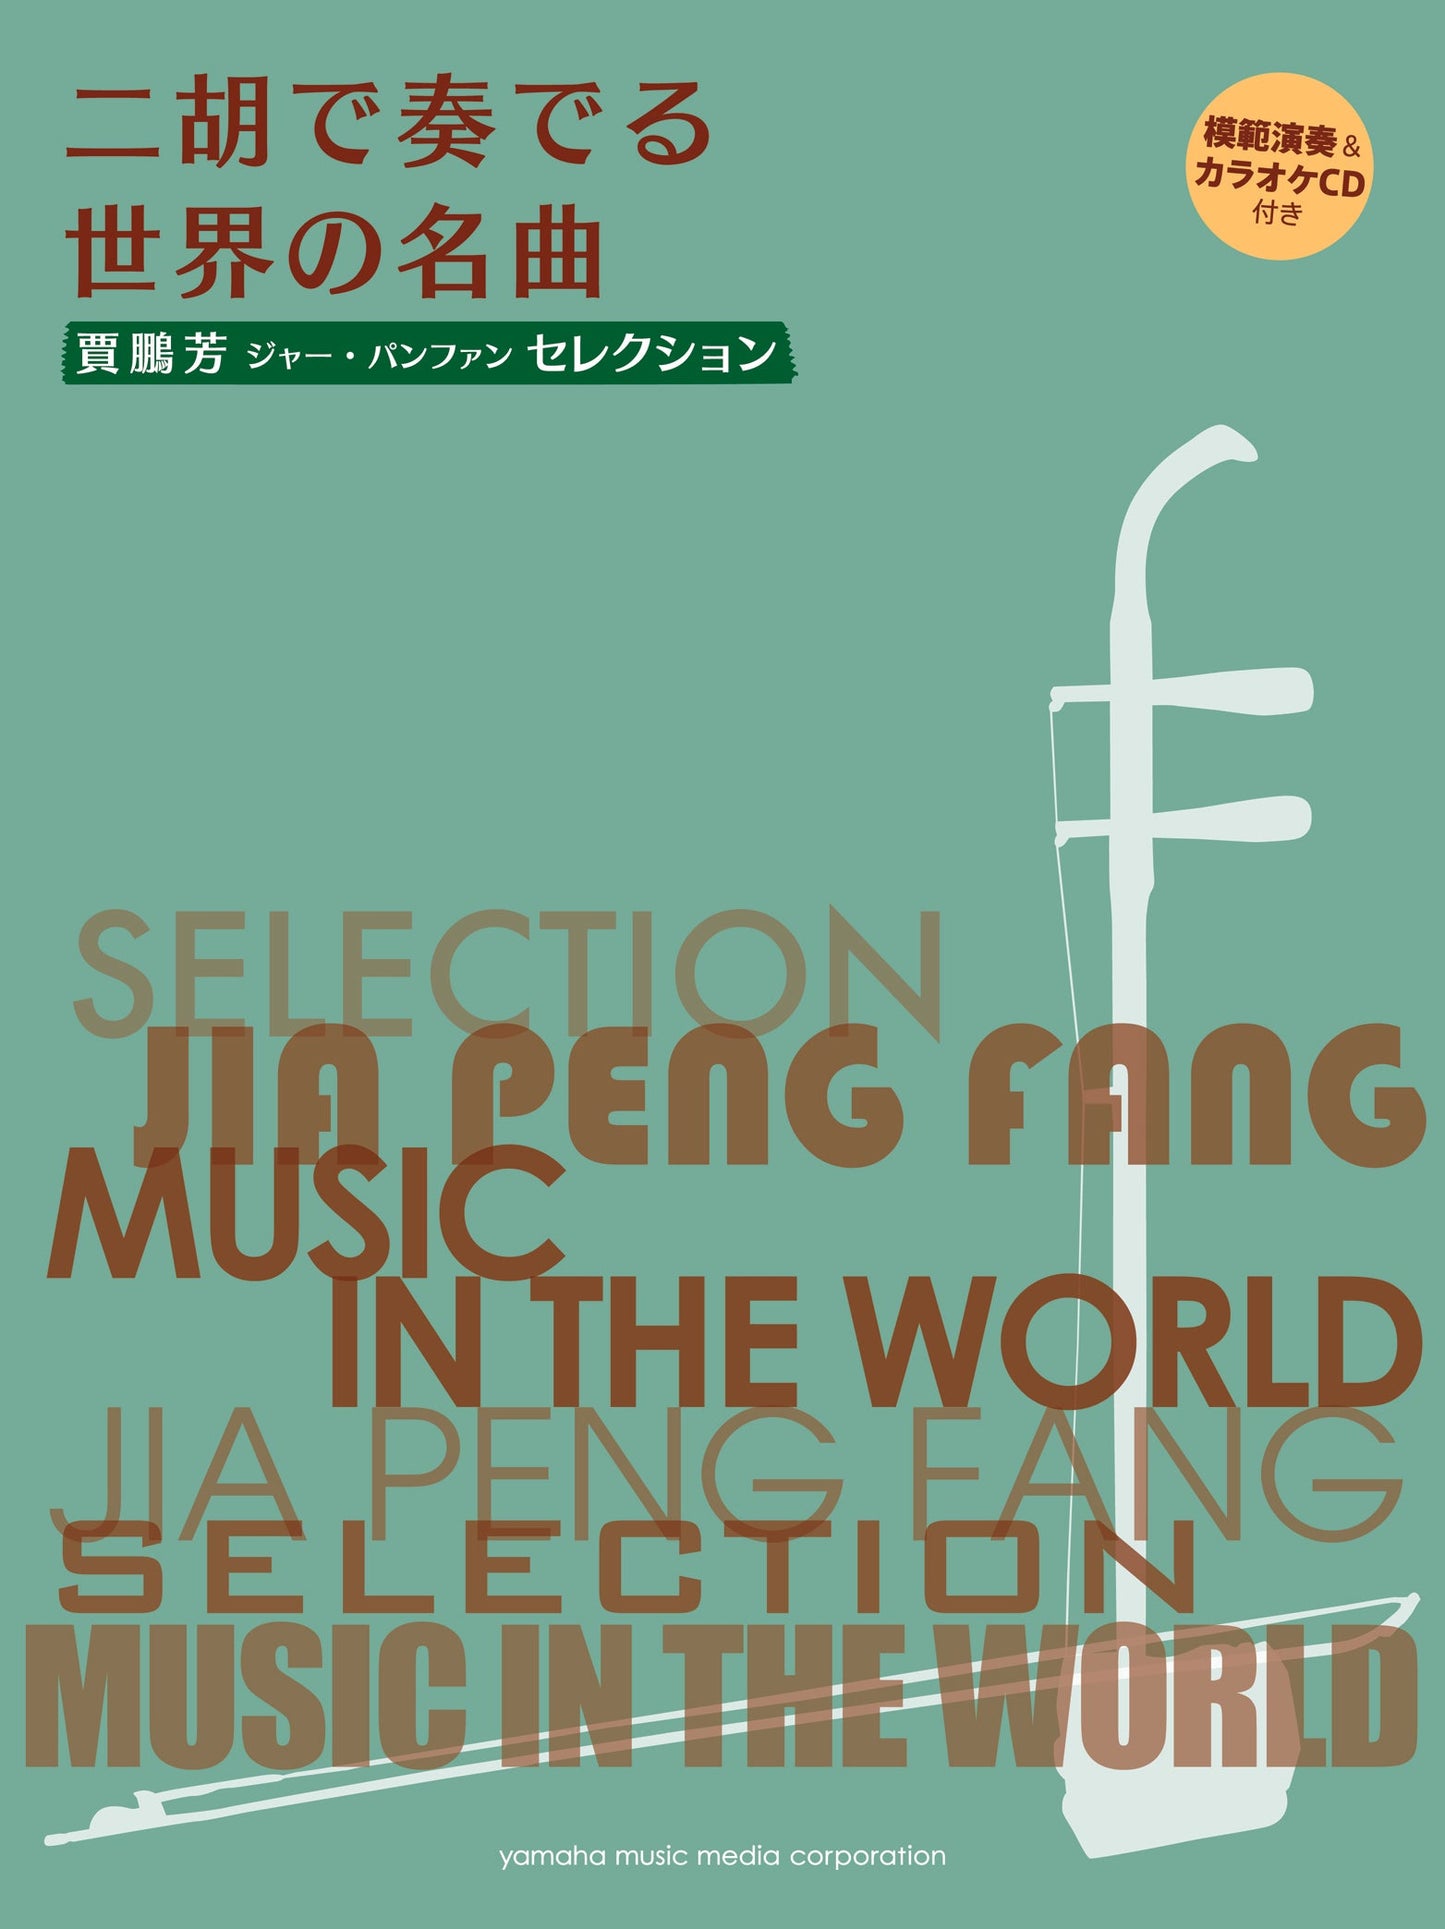 賈鵬芳(ジャー・パンファン)セレクション 二胡で奏でる世界の名曲